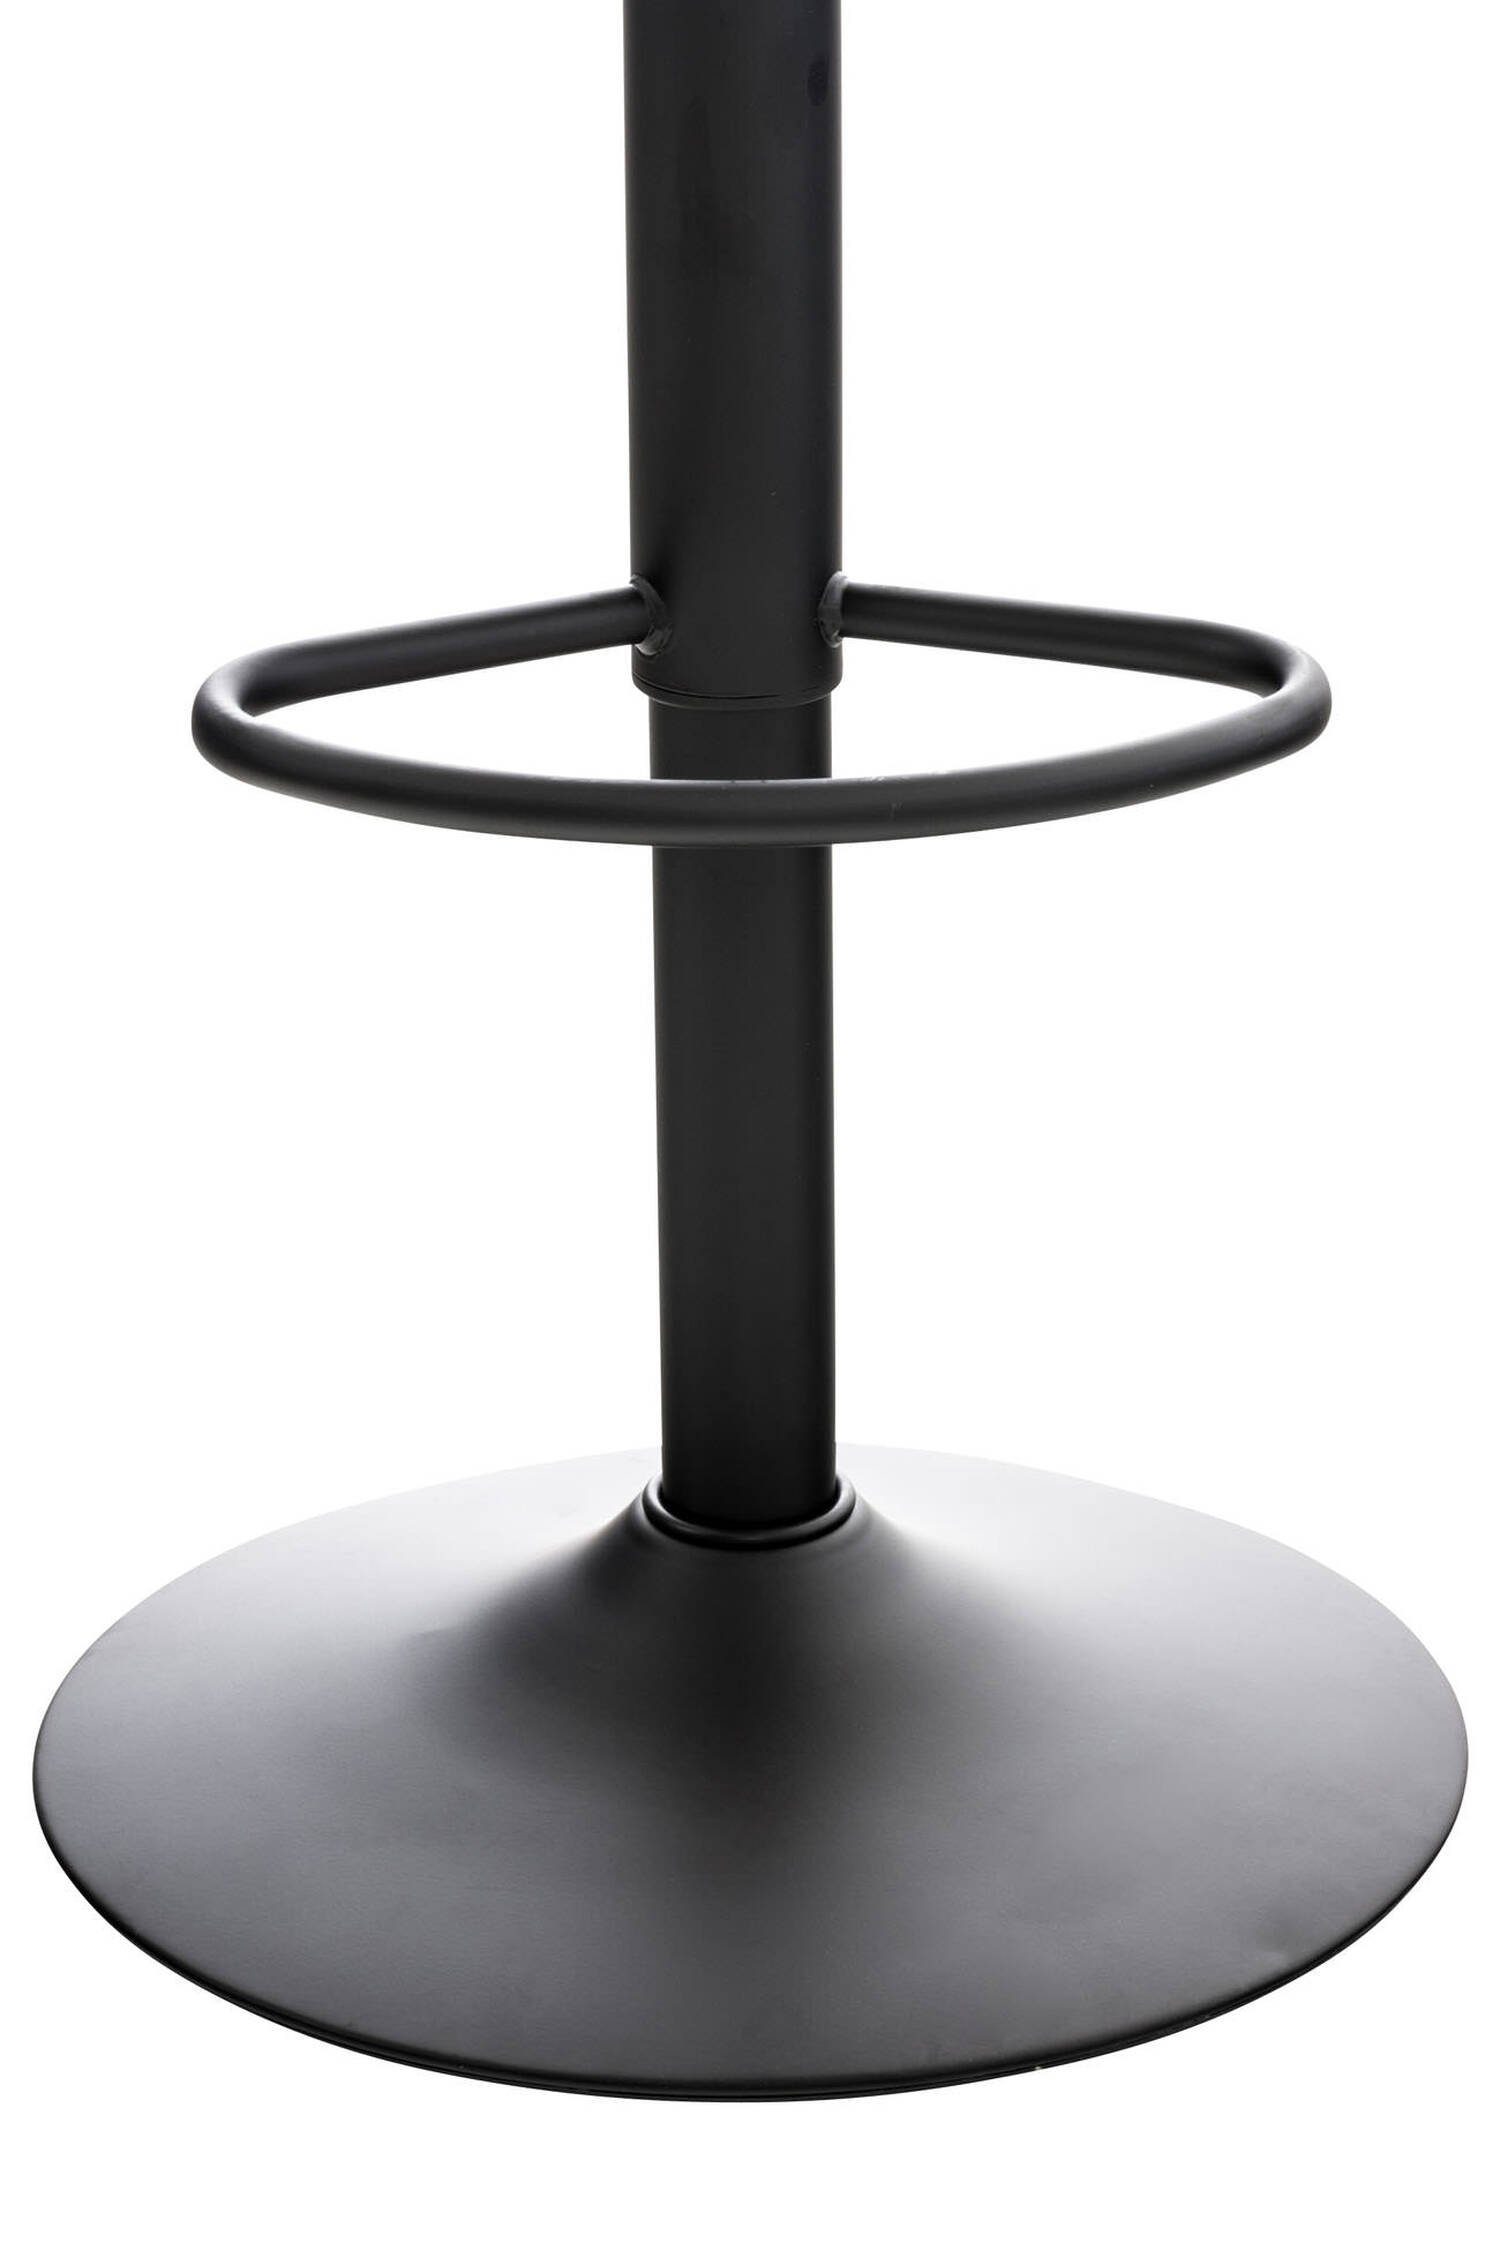 Sitzfläche: Fußstütze Küche Kunststoff mit für Gestell Schwarz Hocker - & Rückenlehne - Almeria TPFLiving bequemer angenehmer und Barhocker (Barstuhl und drehbar), Metall höhenverstellbar schwarz Theke